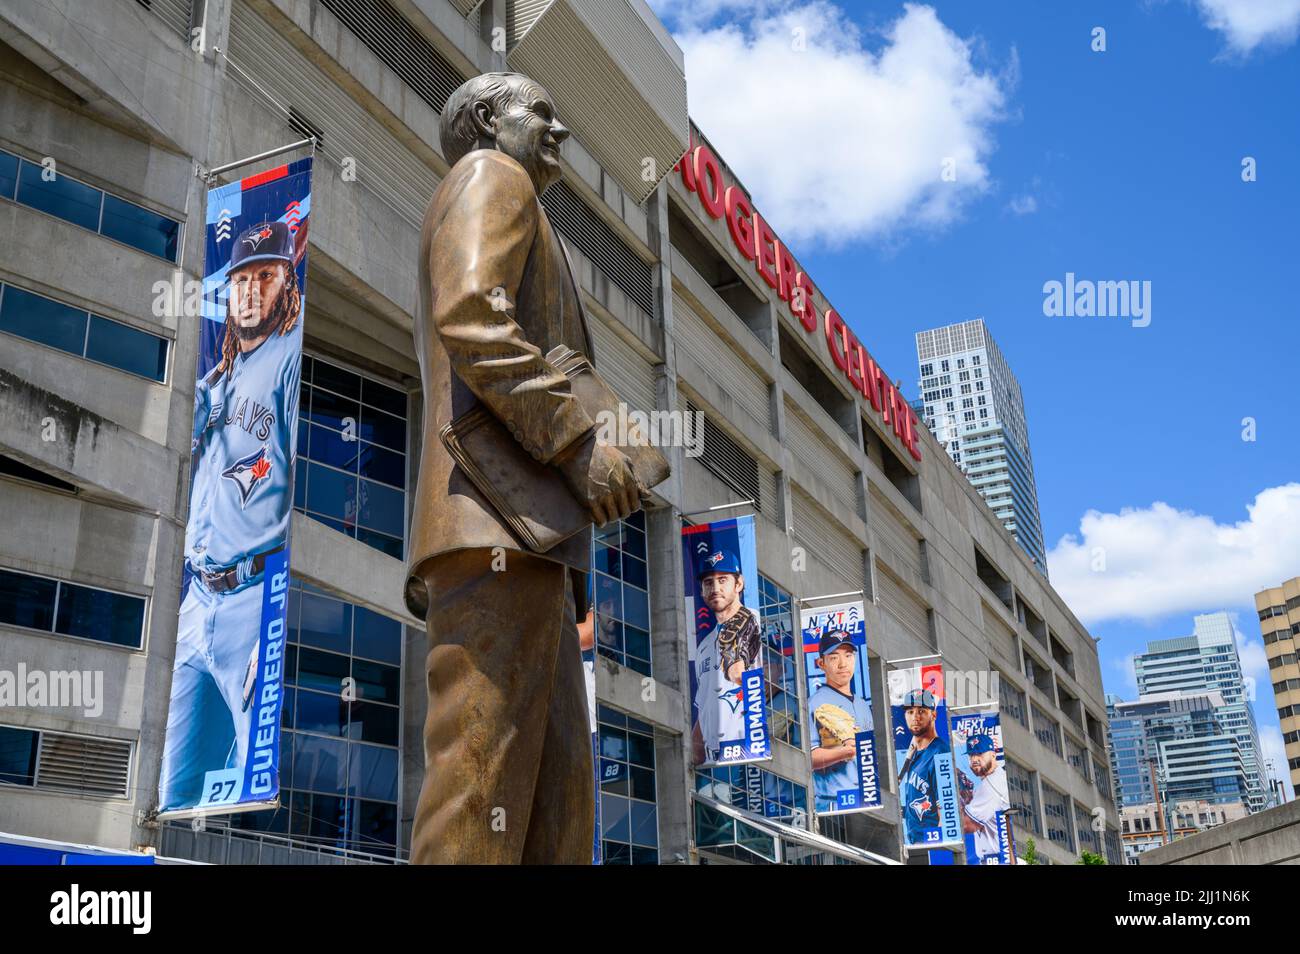 Estatua de bronce de Ted Rogers, antiguo propietario del equipo de béisbol Blue Jays, en las afueras del estadio Rogers Centre, Toronto, Canadá. Foto de stock